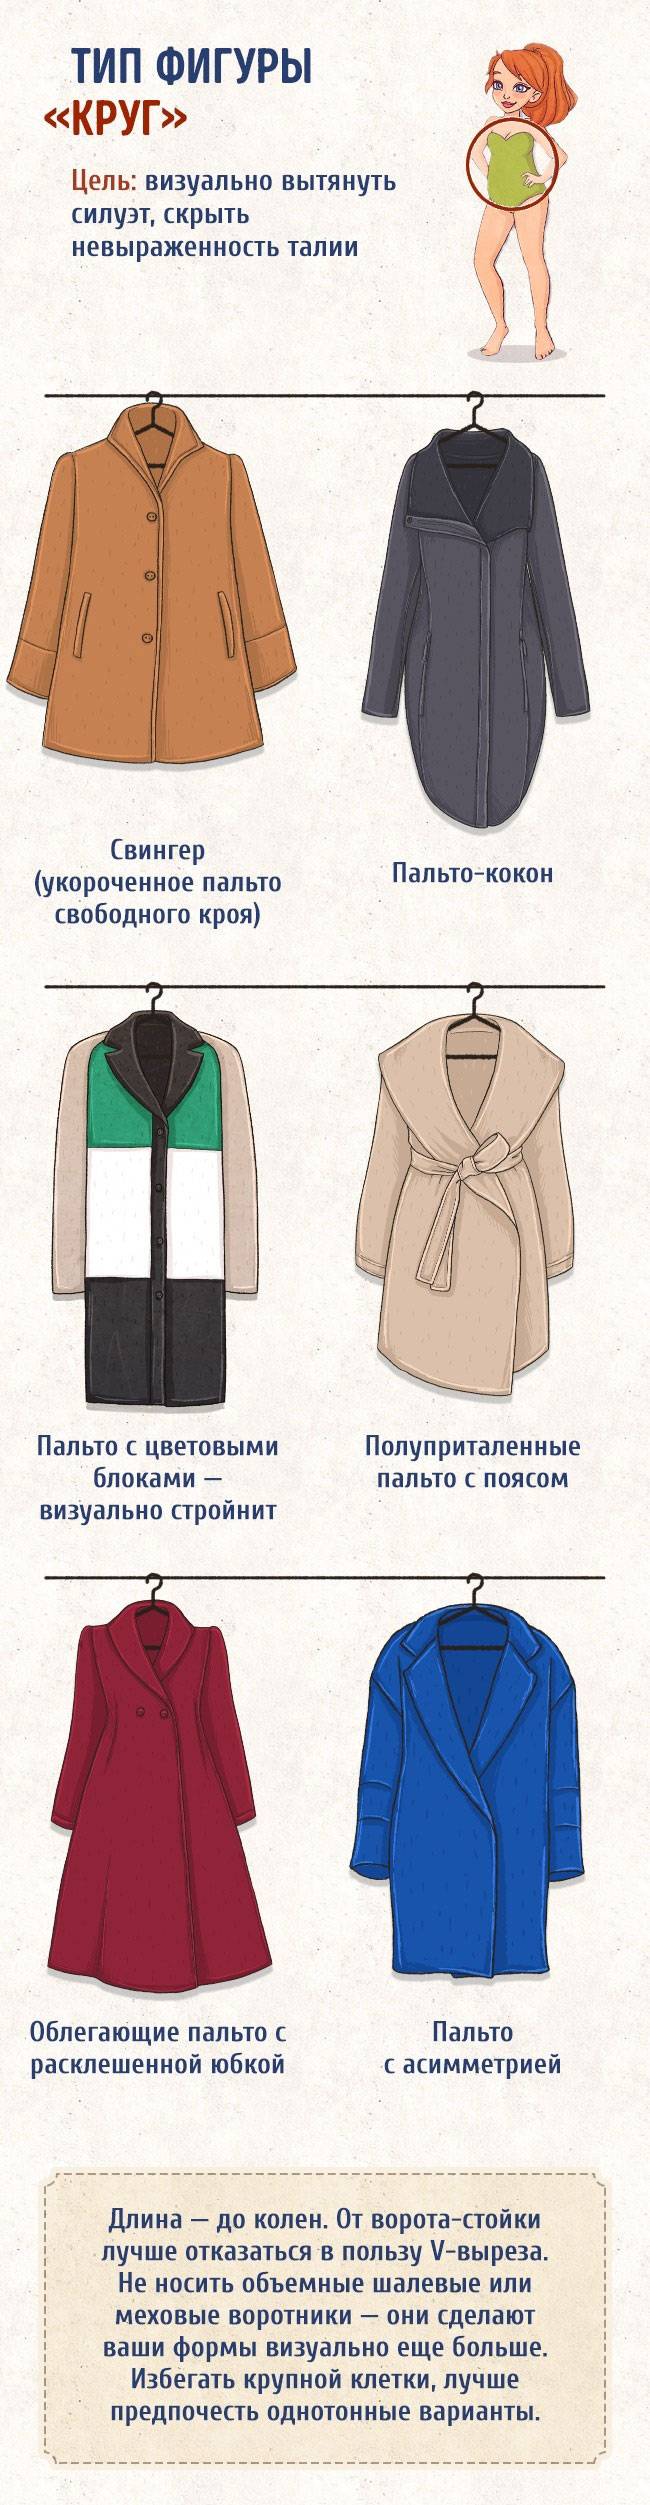 Как выбрать куртку, которая стройнит?